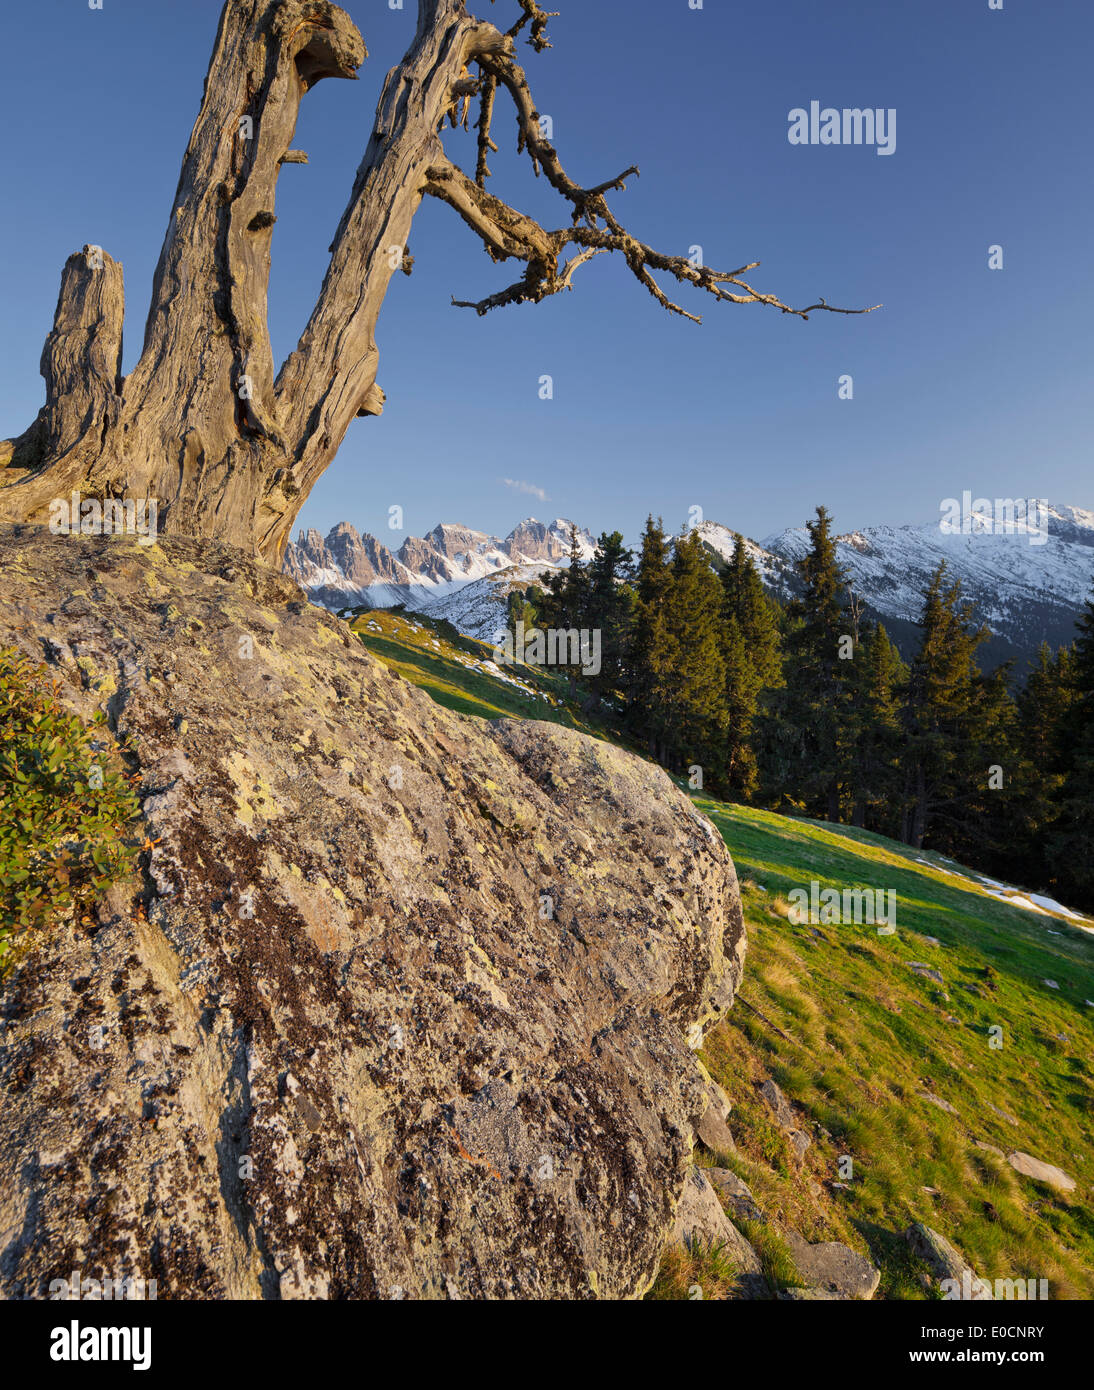 Kalkkoegel aus Salfains, Stubaier Alpen, Tirol, Österreich Stockfoto